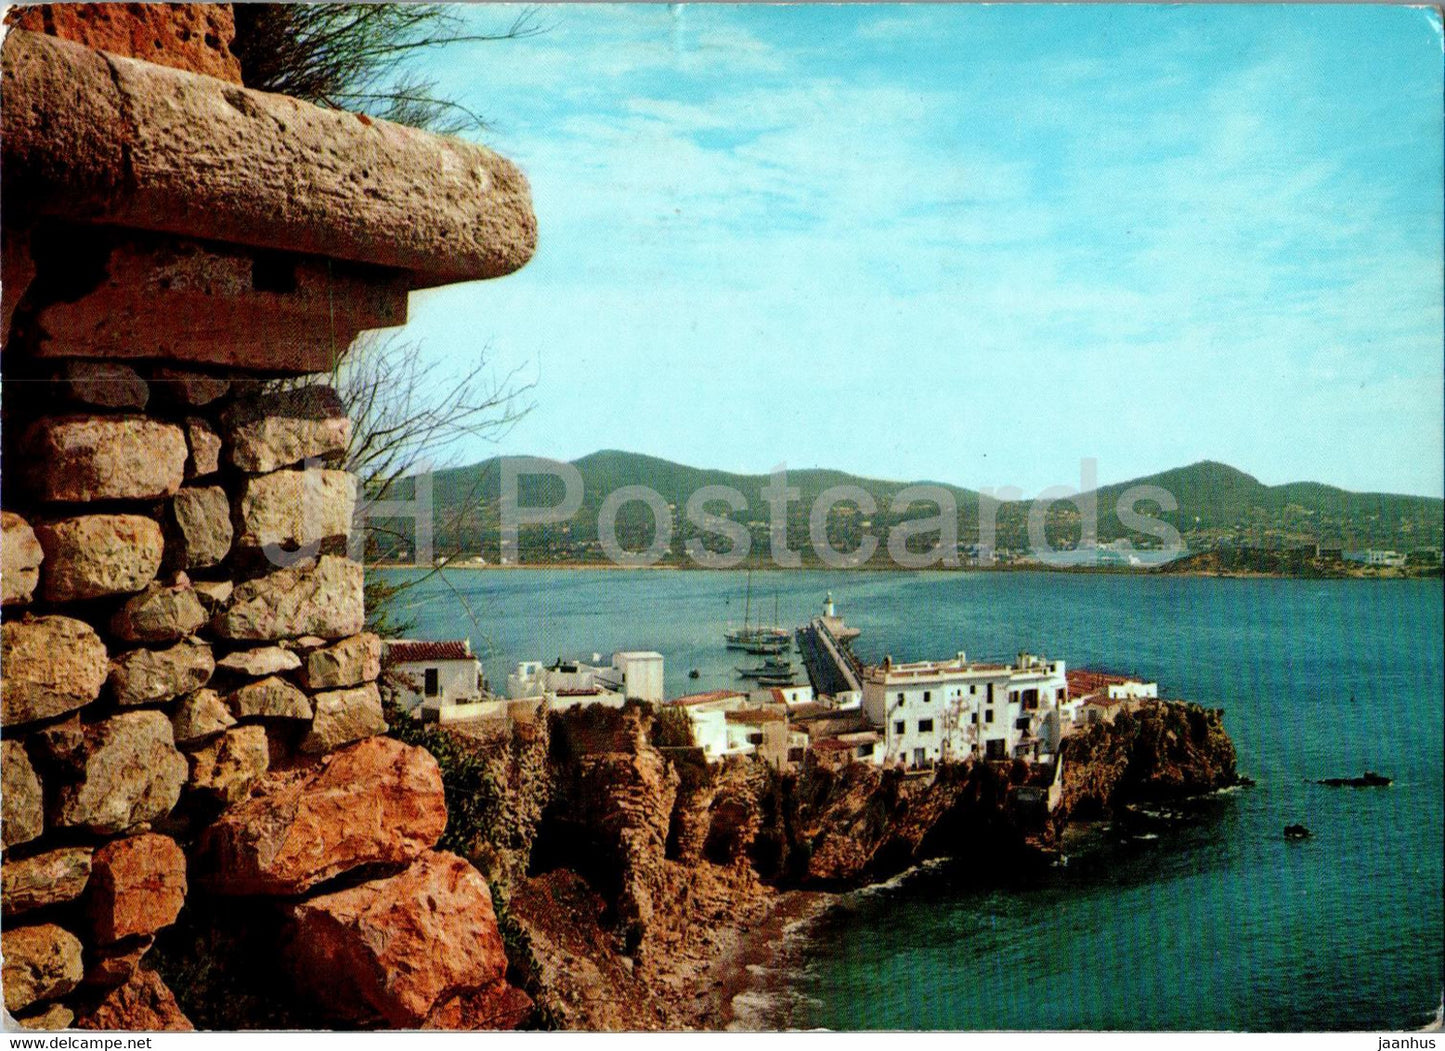 Ibiza - La Pena y faro del puerto desde el castillo - 3683 - Spain - used - JH Postcards